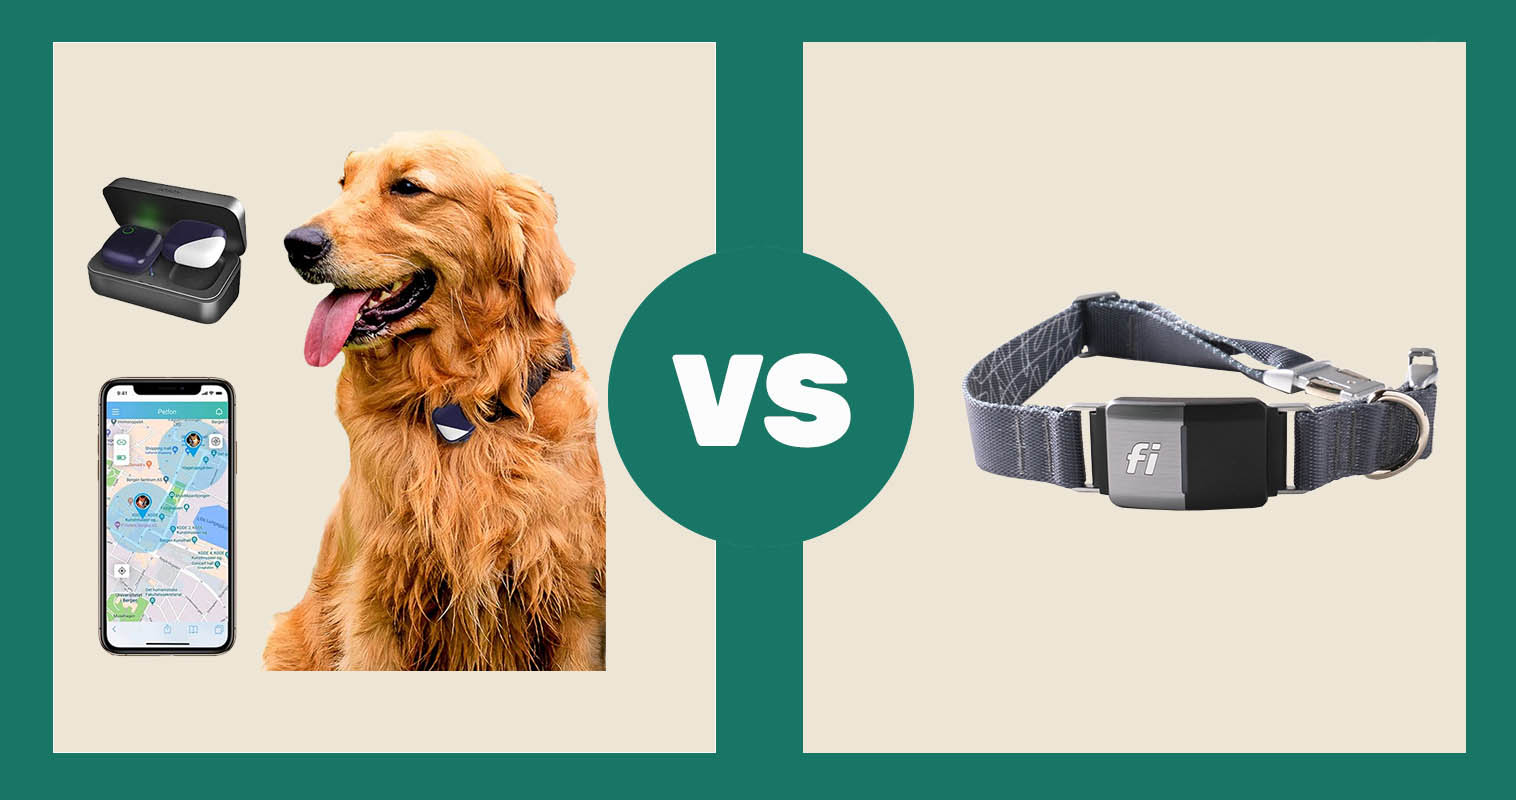 PETFON Pet GPS Tracker vs Fi Dog Collar